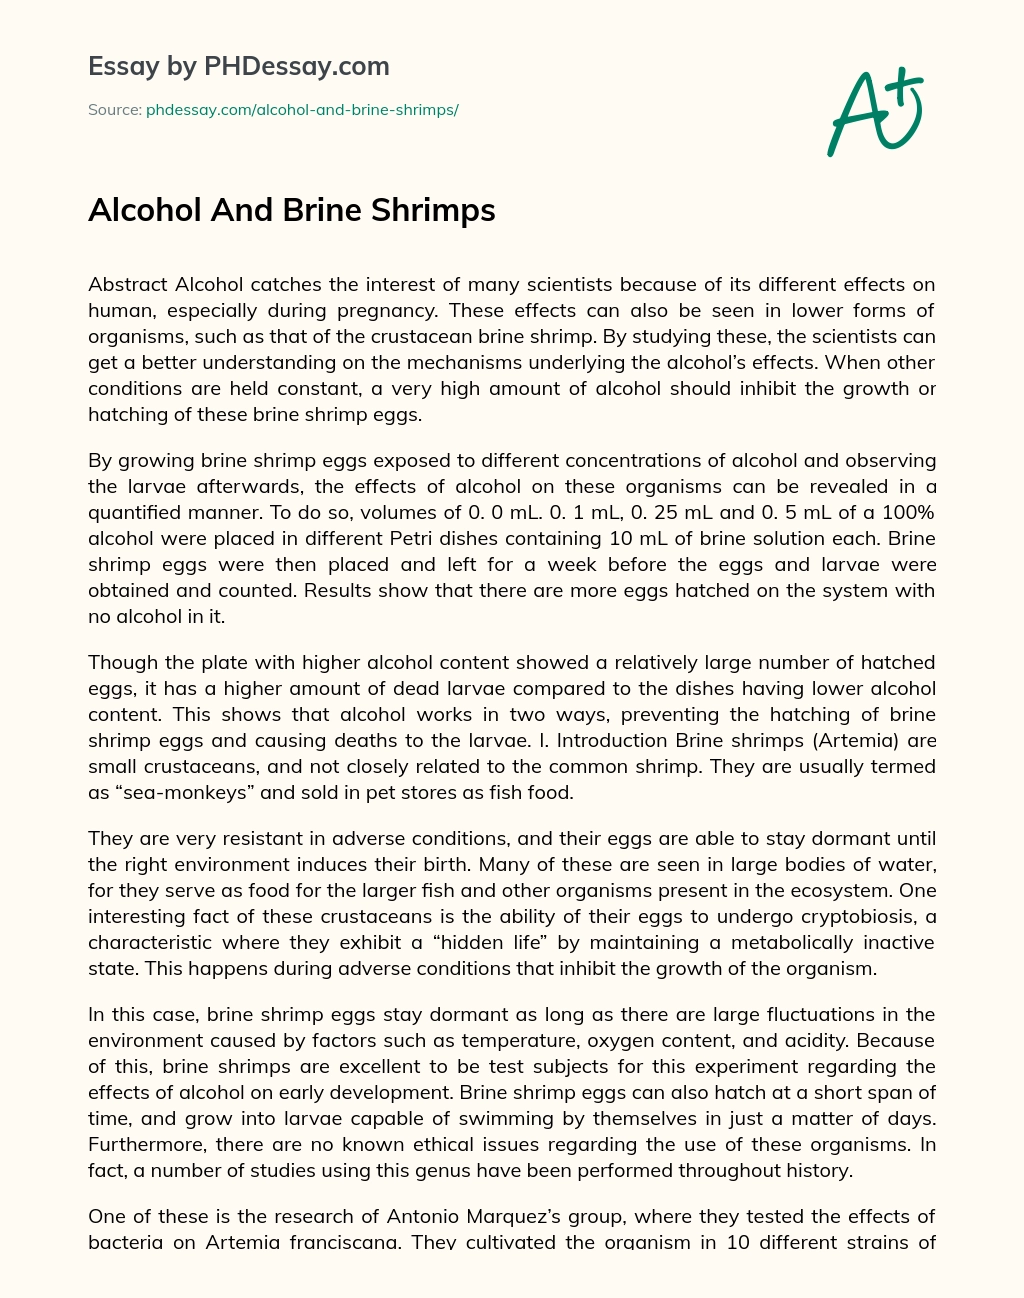 Alcohol And Brine Shrimps essay